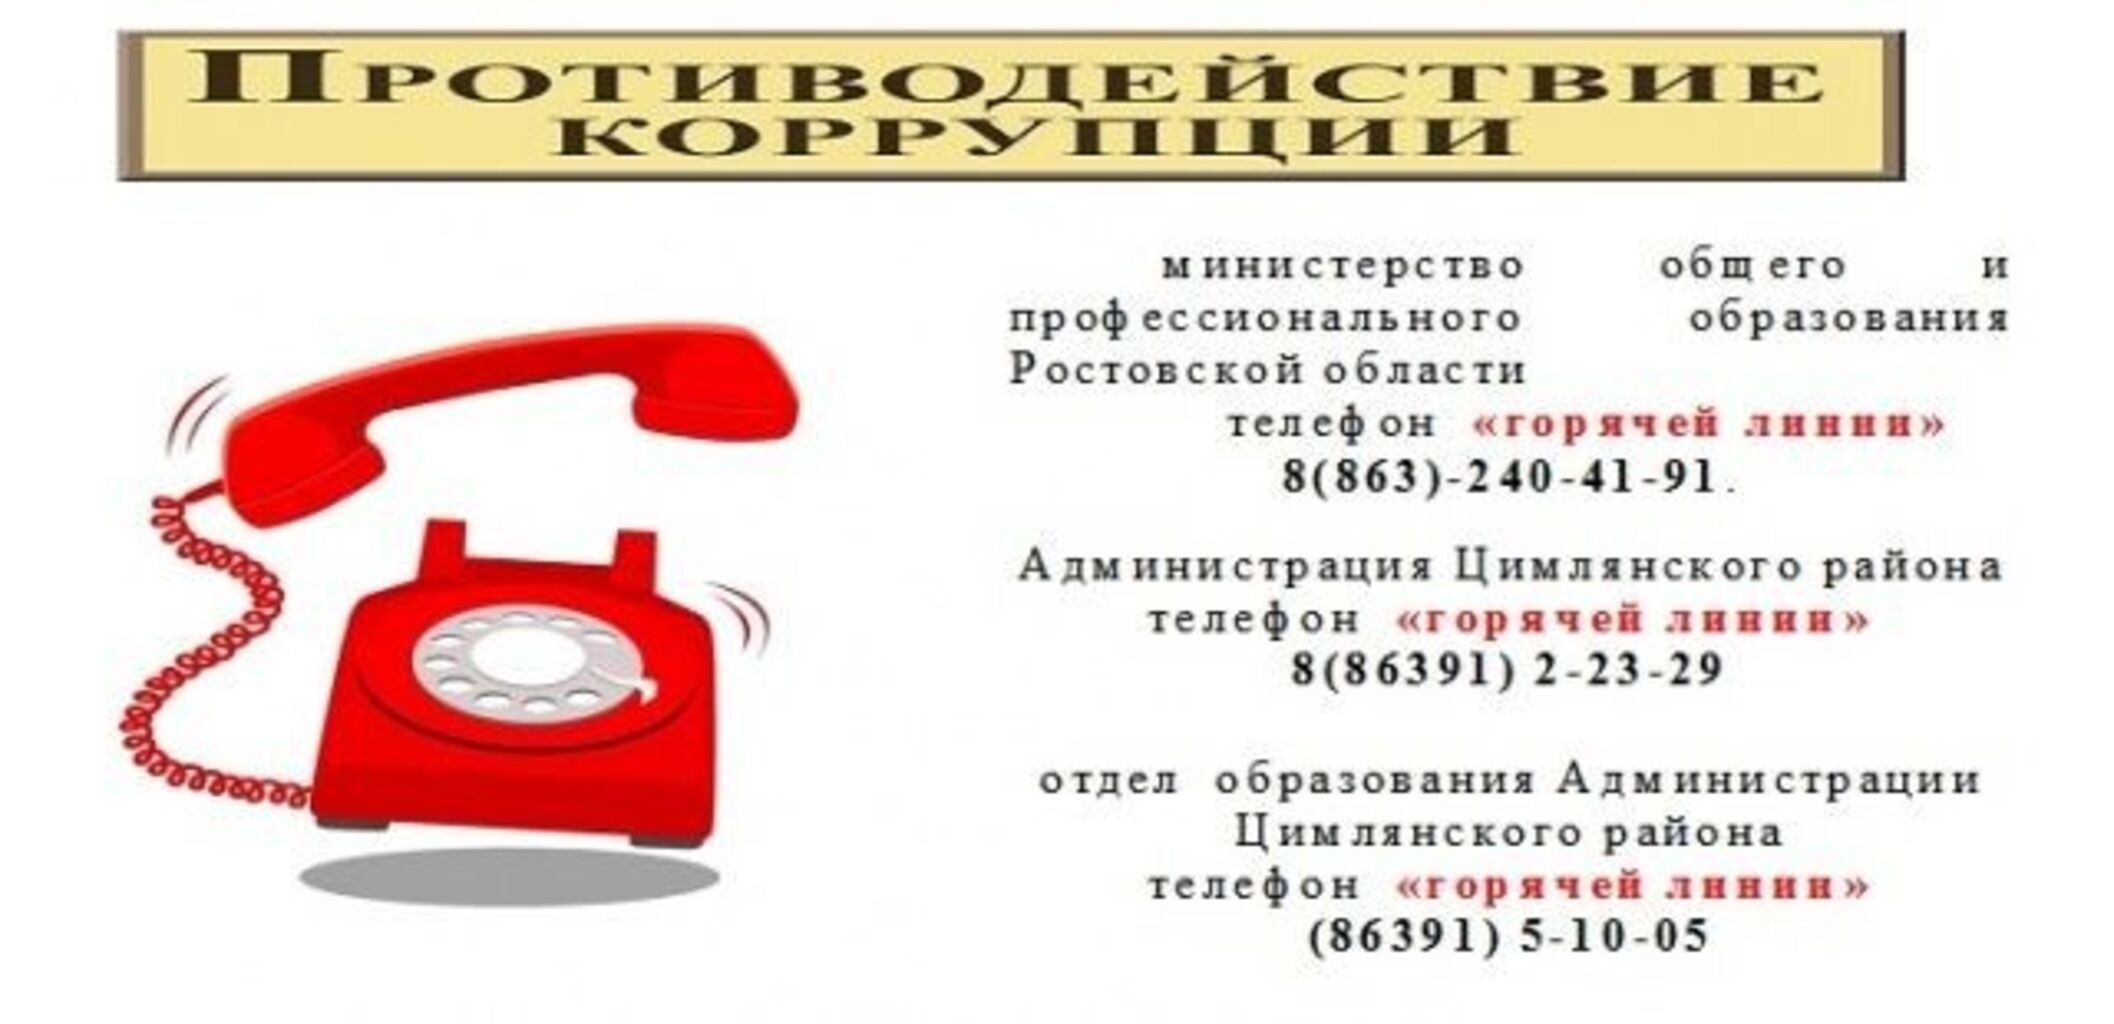 Телефон горячей линии казахстана. Горячая линия коррупция. Телефон горячей линии. Фотография телефона для горячей линии. Телефон горячей линии областной администрации.